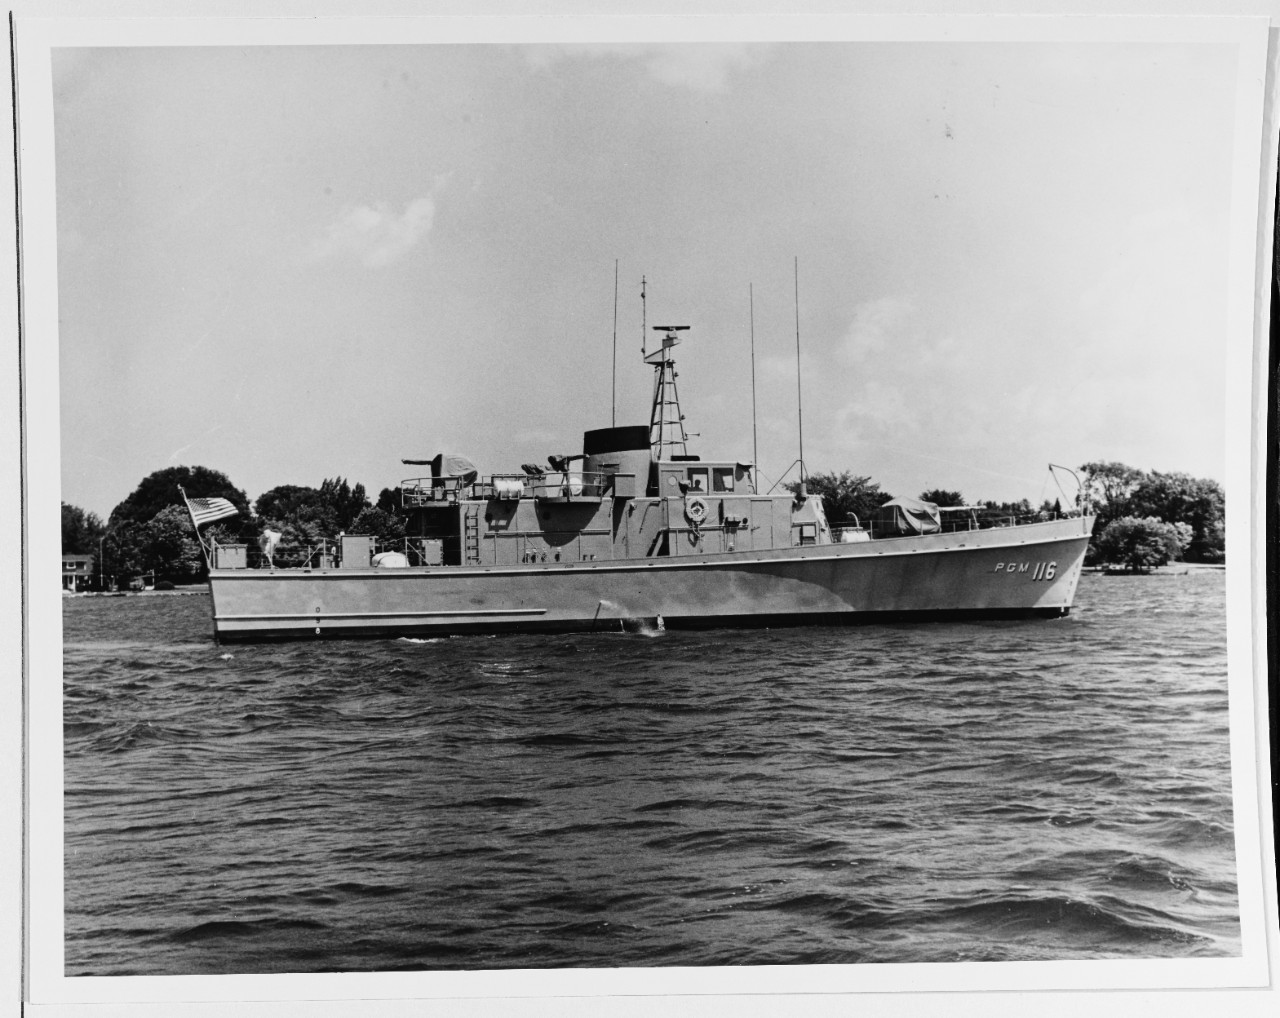 USS PGM-116